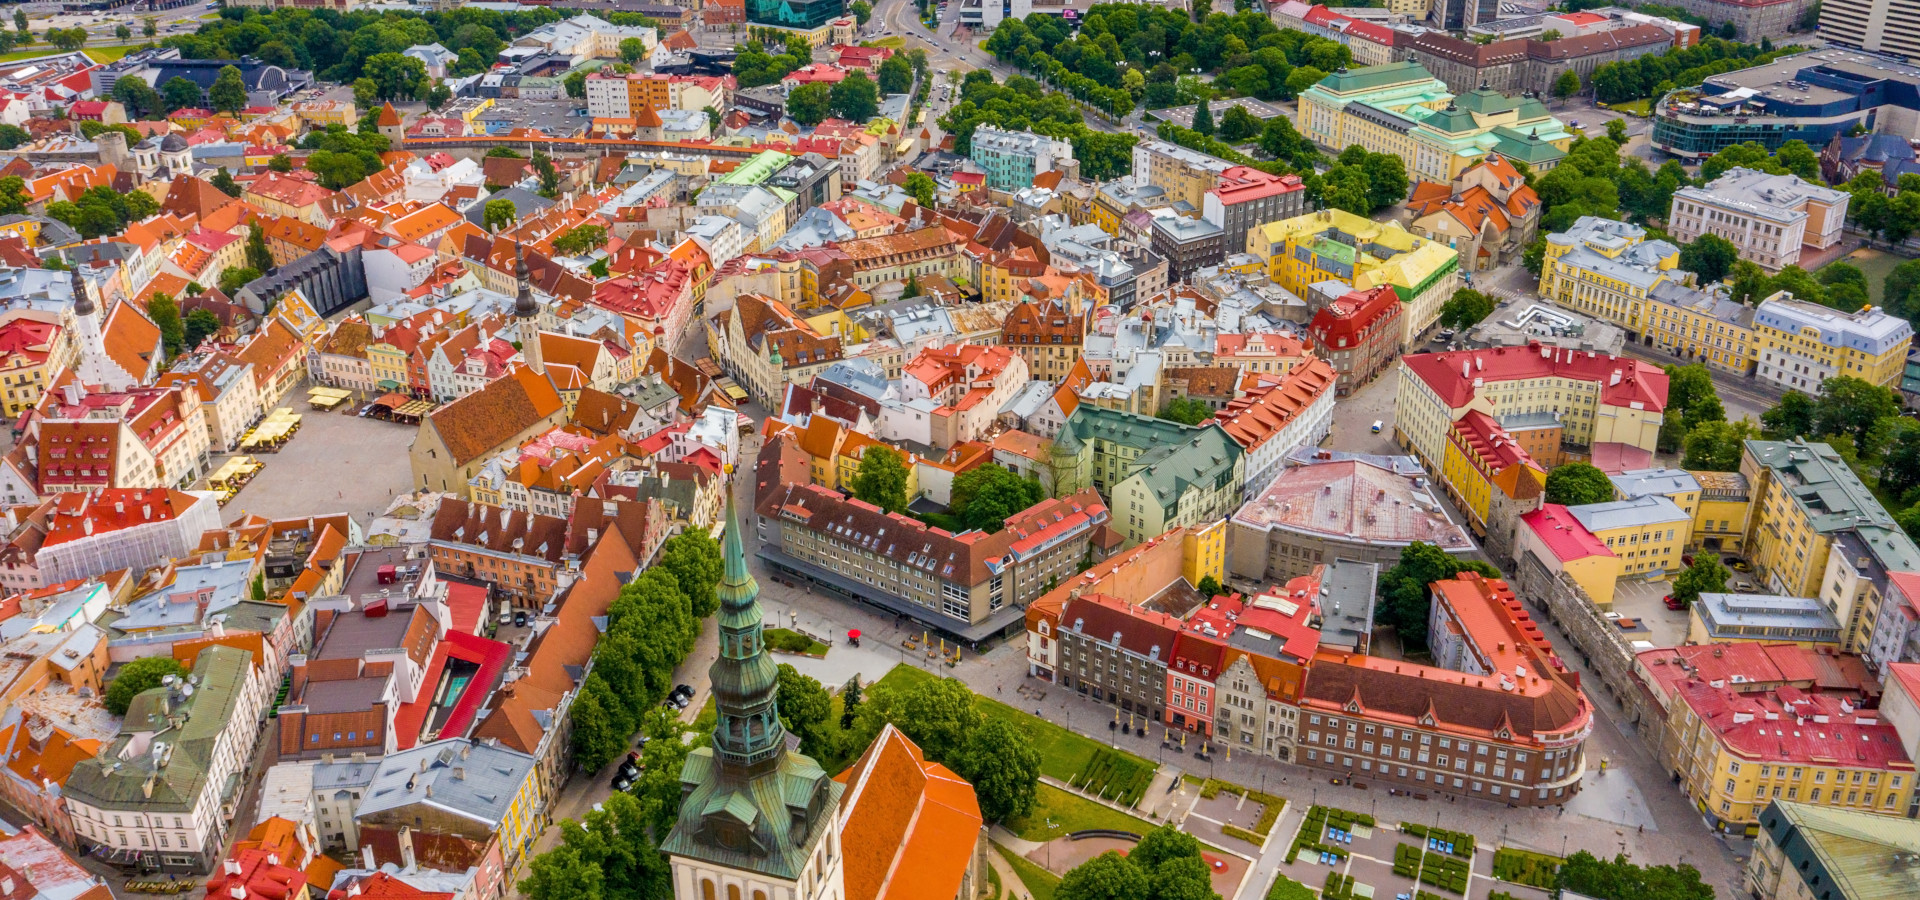 Luftaufnahme der Altstadt von Tallinn mit orangefarbenen Dächern und engen Straßen darunter.